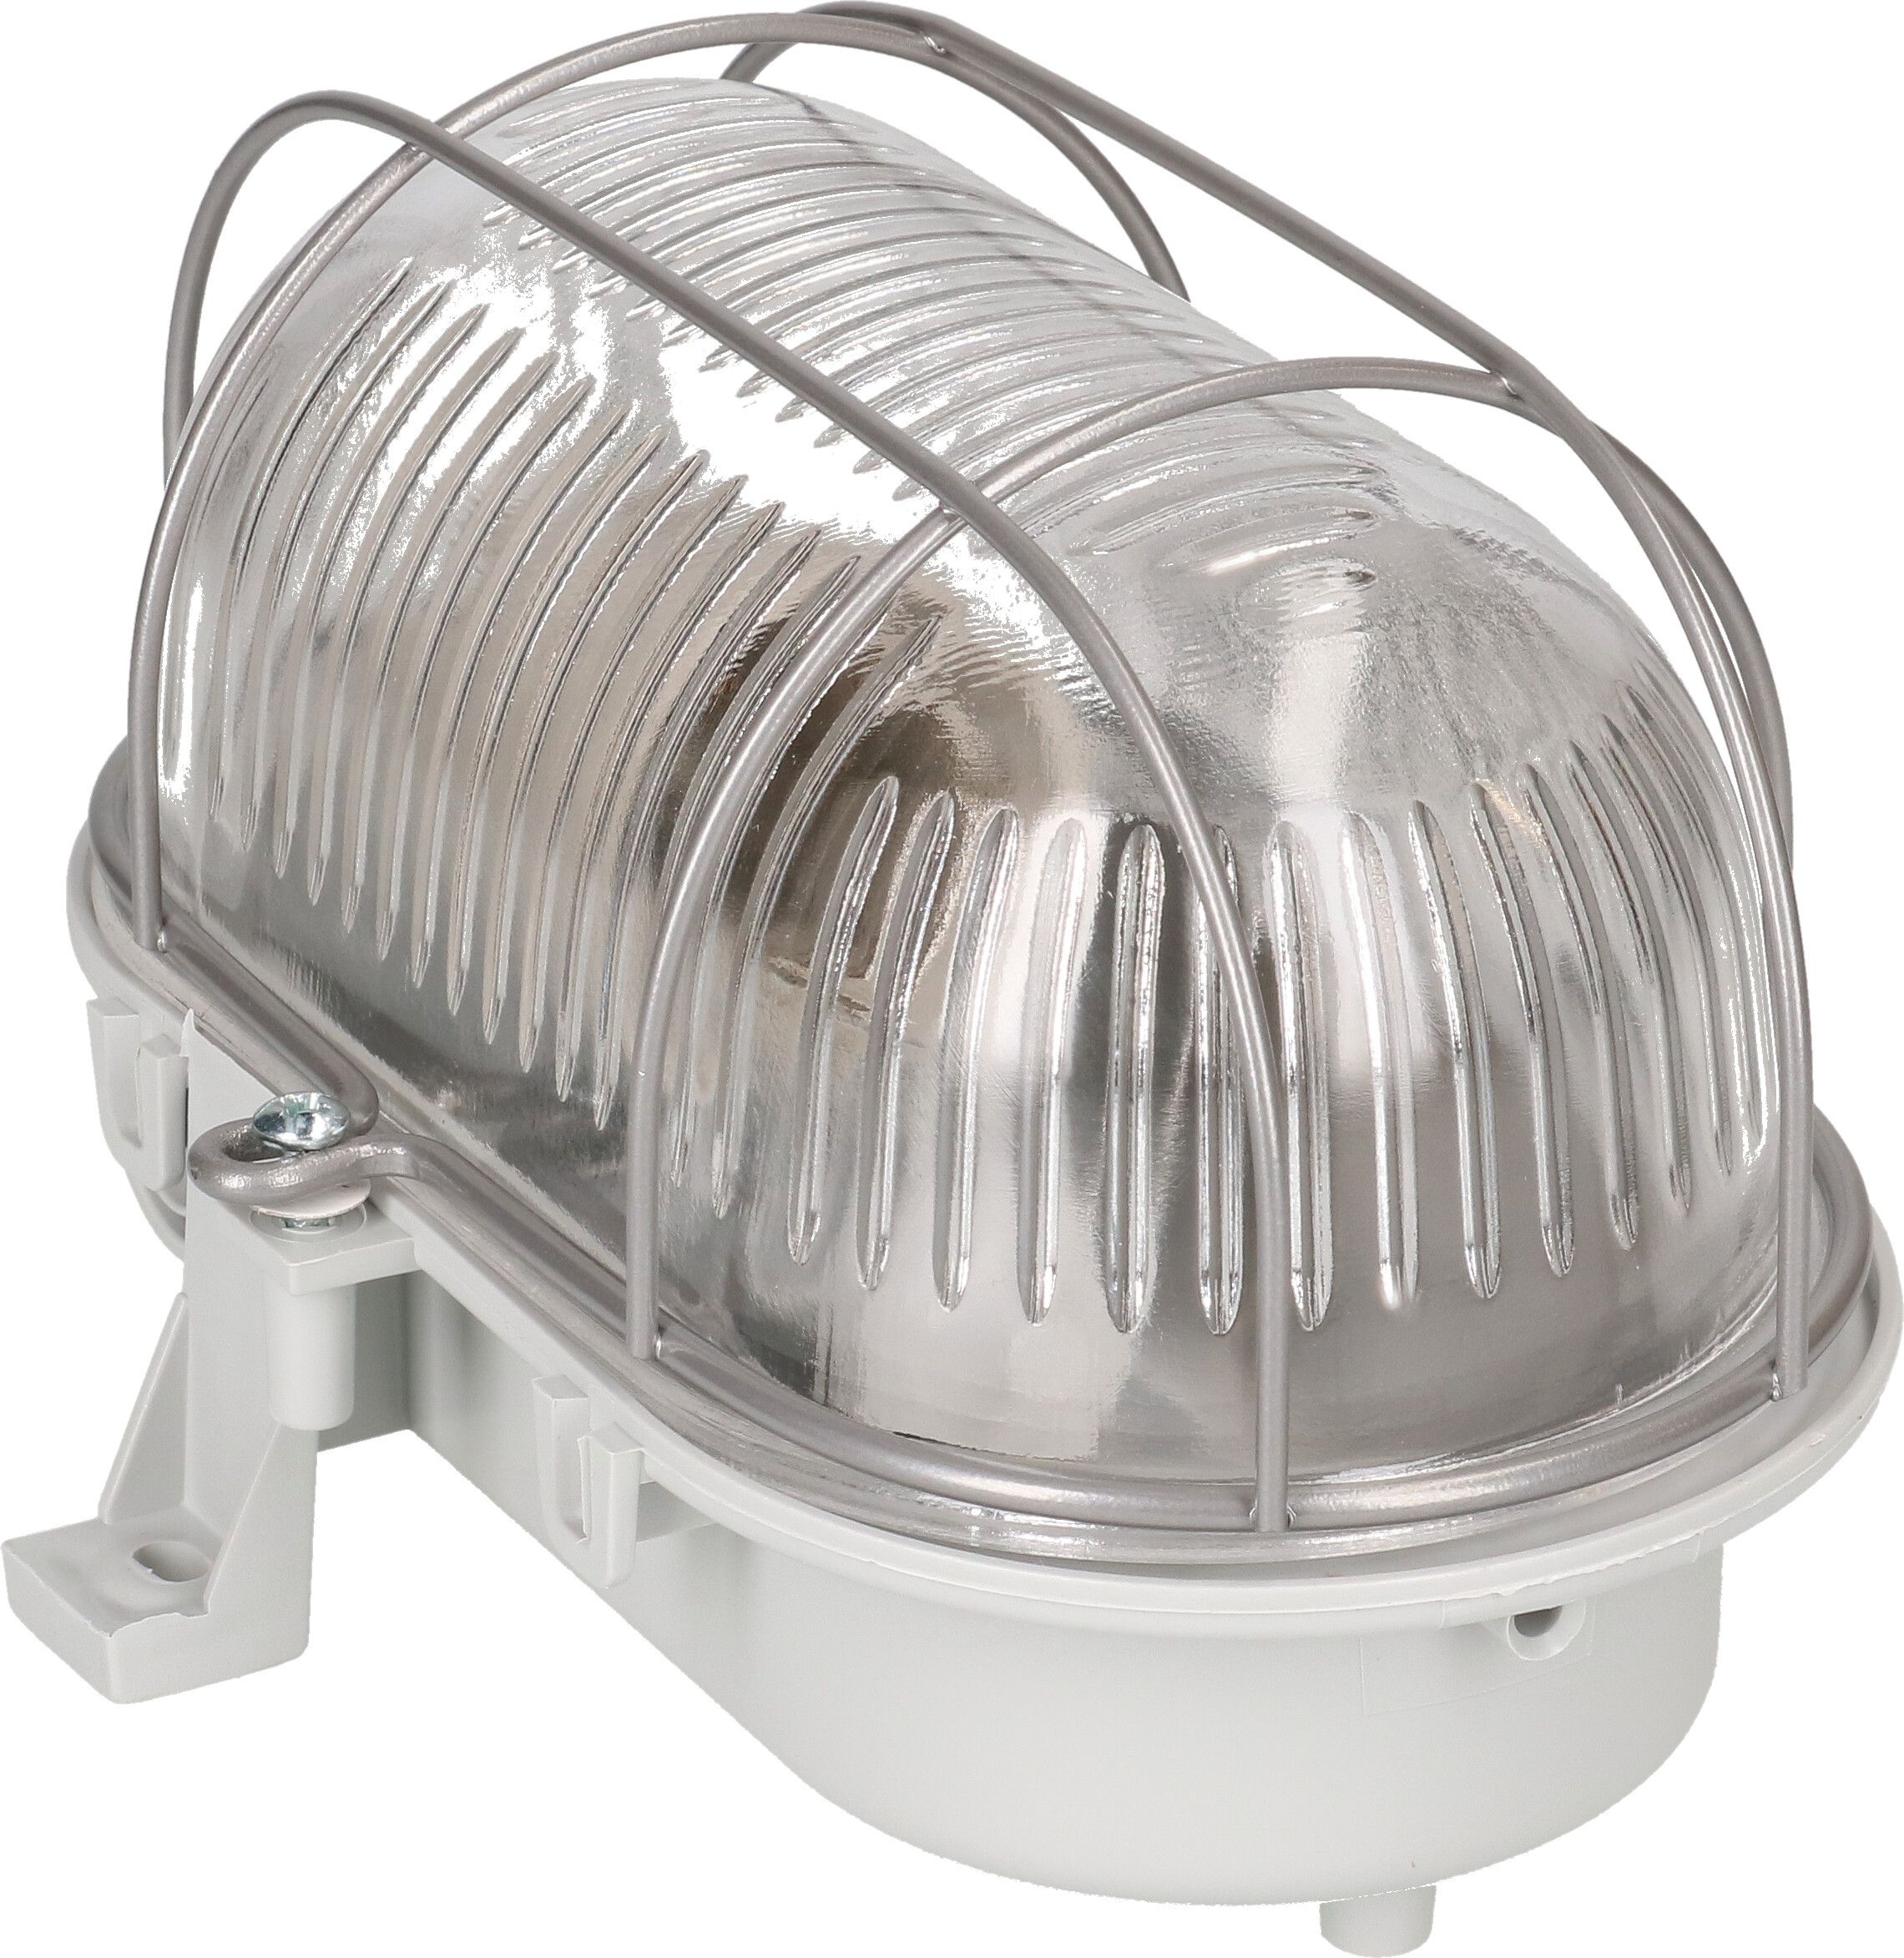 luminaire ovale pour les ampoules E27